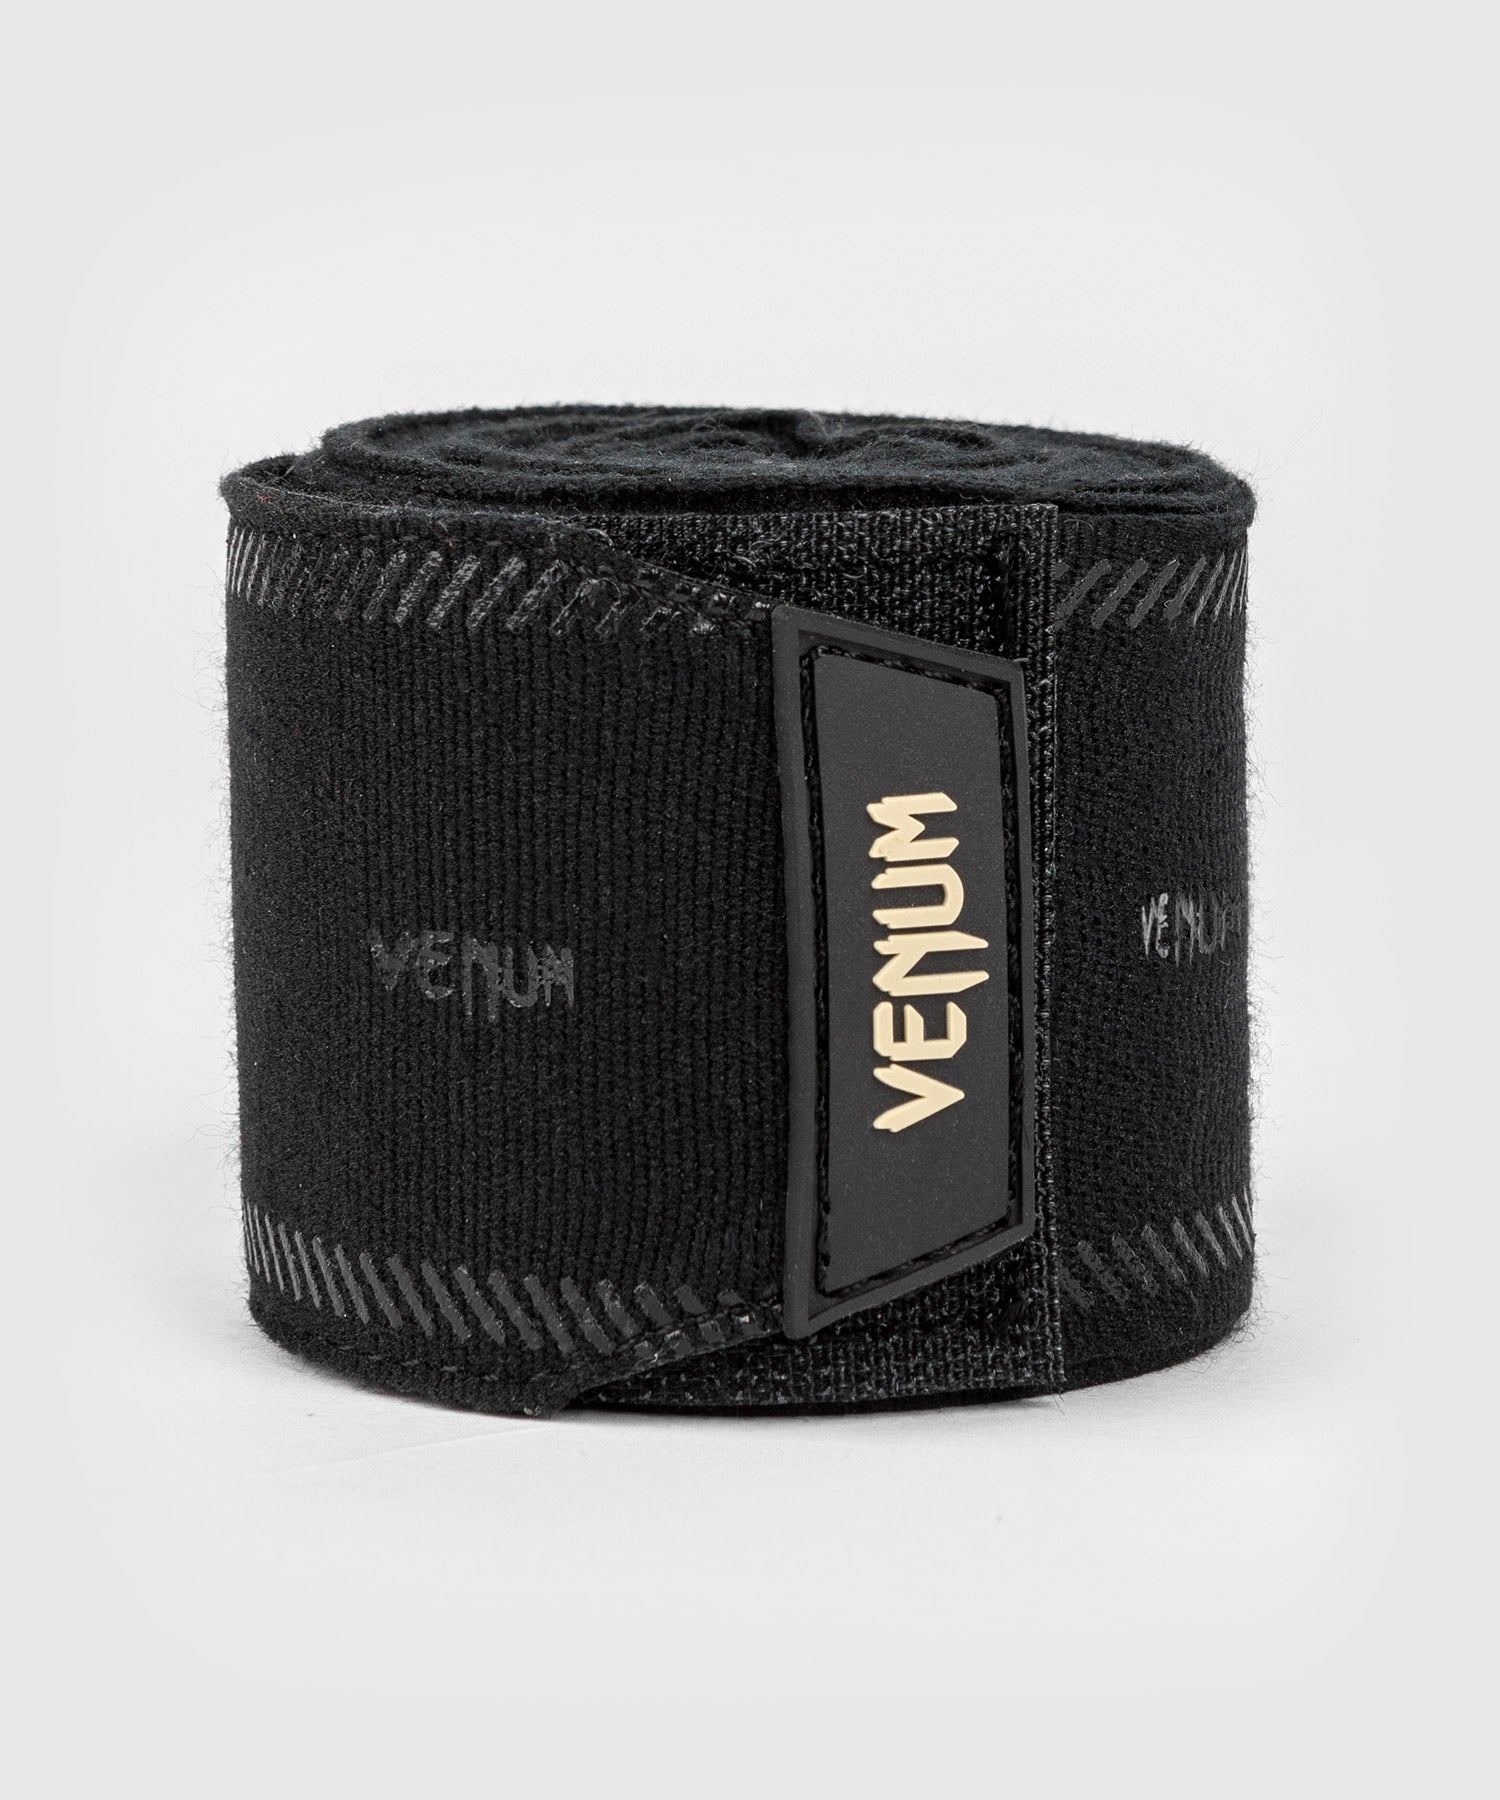 Bandes de Boxe Venum Impact Evo - Noir - 4,5m – Venum France